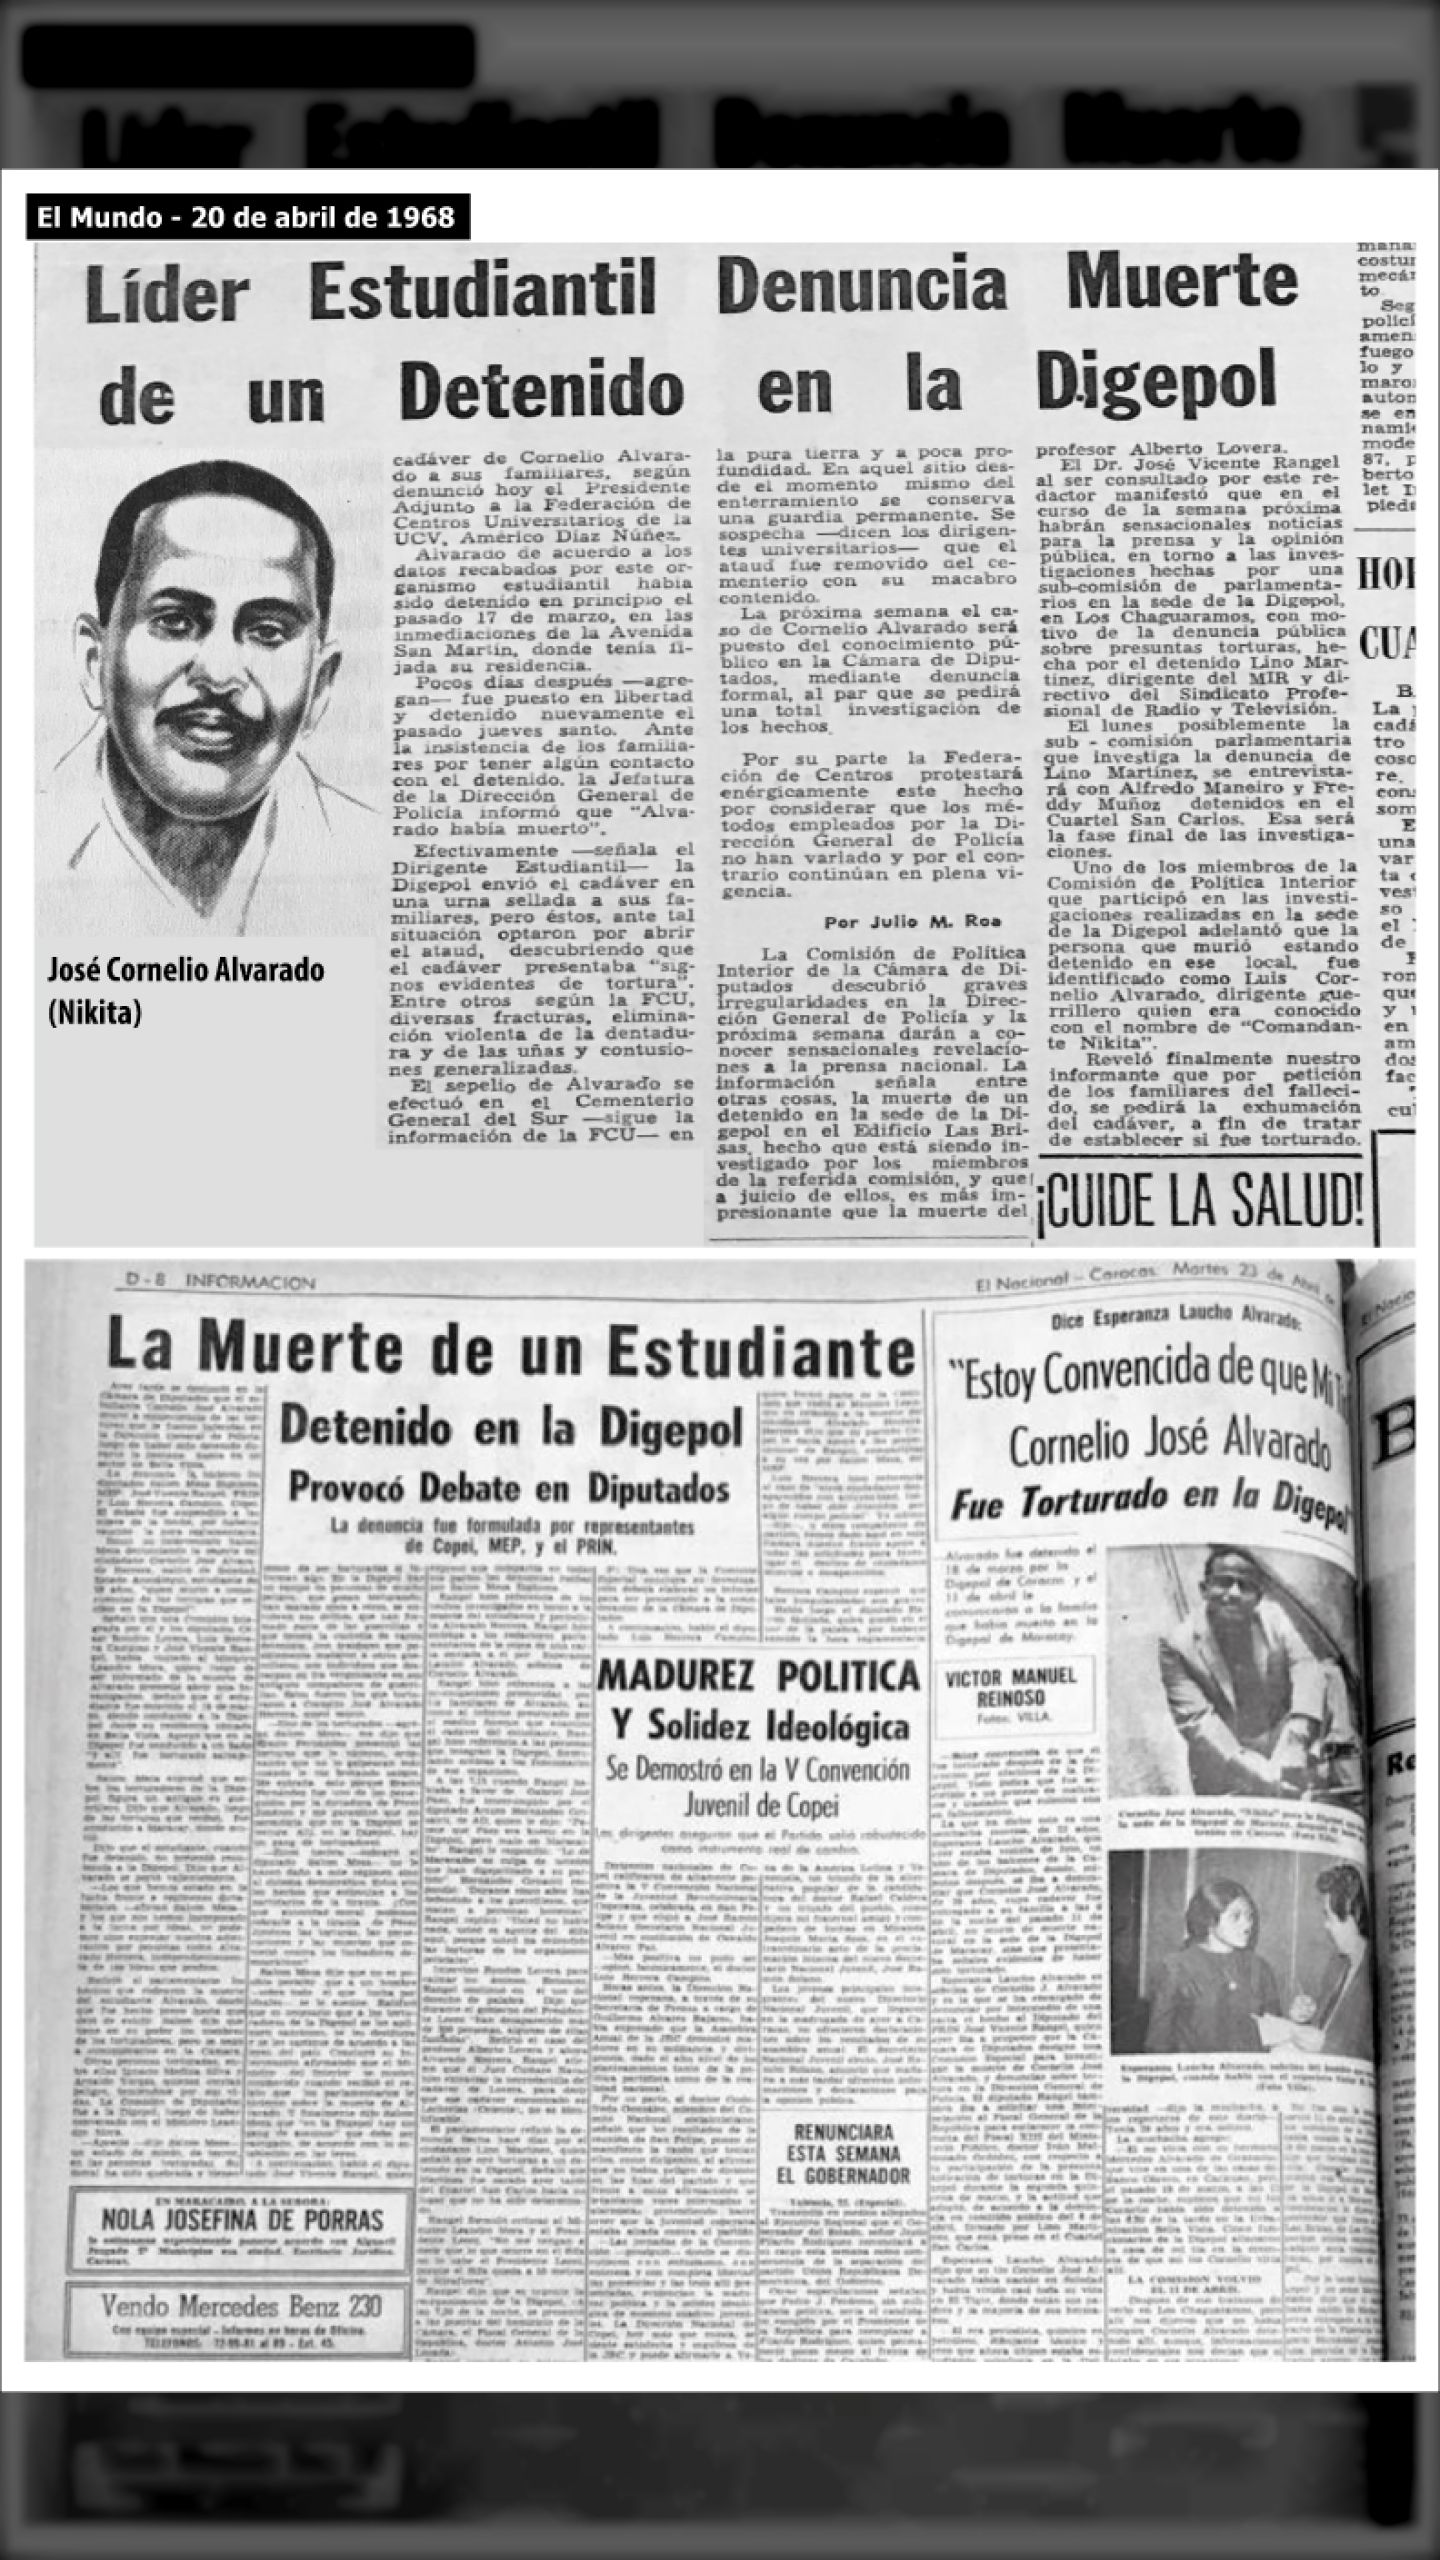 ES ASESINADO EL ESTUDIANTE JOSÉ CORNELIO ALVARADO “NIKITA” (EL NACIONAL y Últimas Noticias, 18 de abril de 1968)